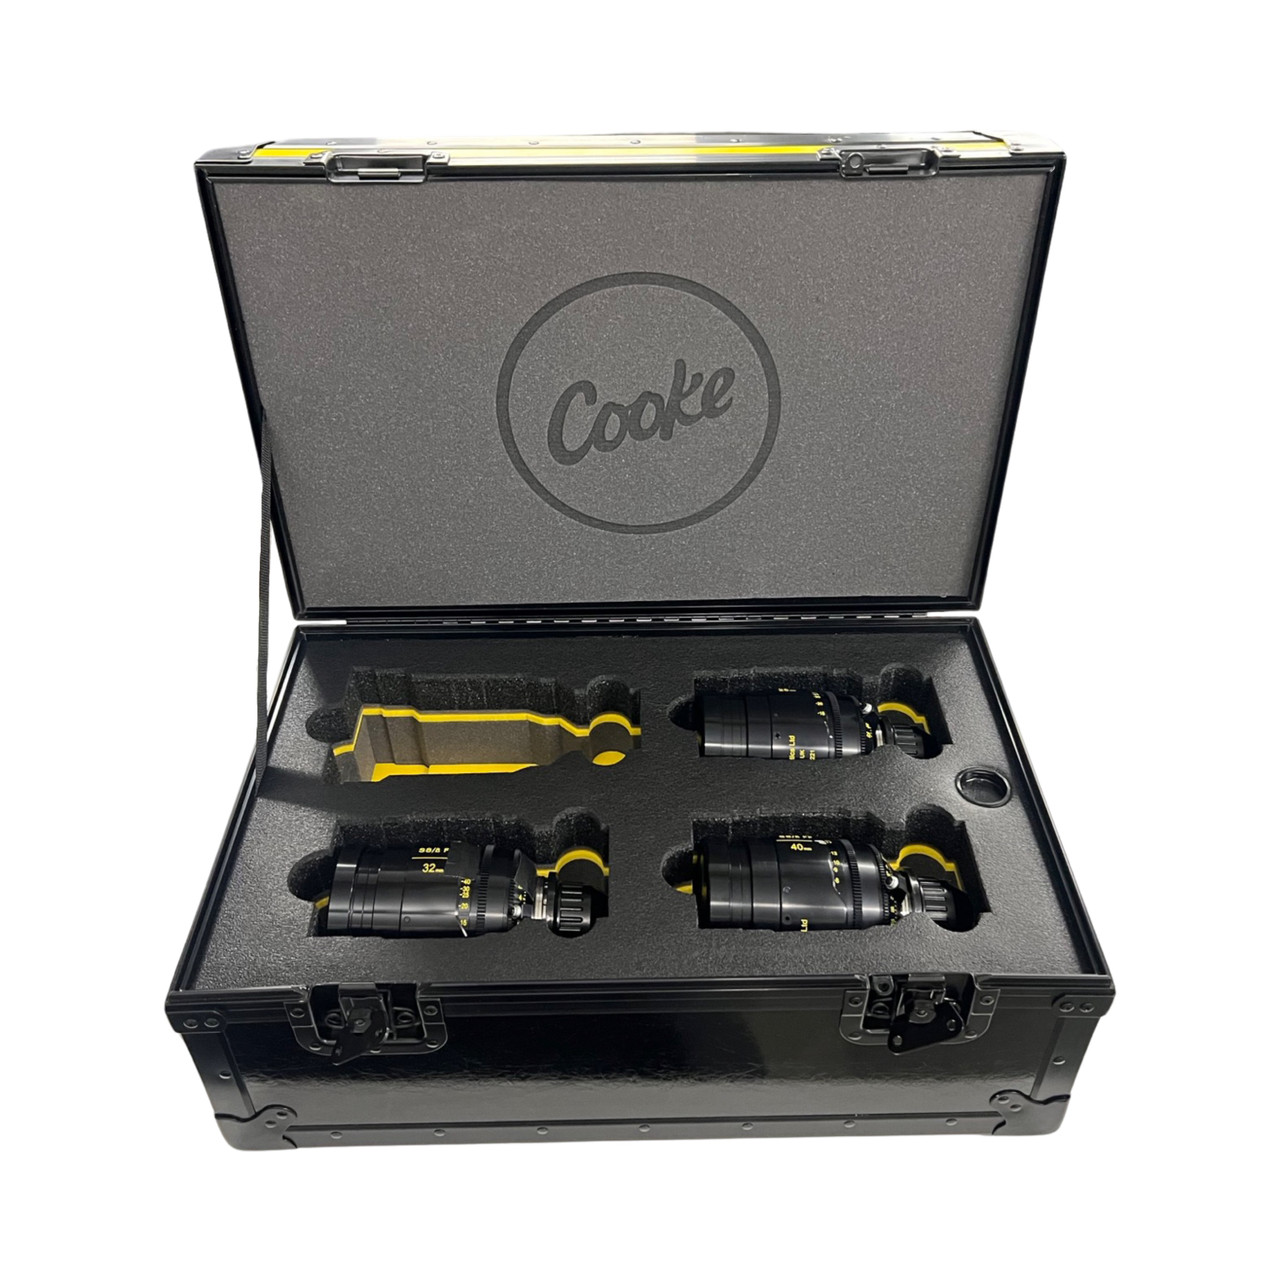 COOKE S8/I FULL FRAME PRIMES 18mm, 25mm, 32mm, 40mm